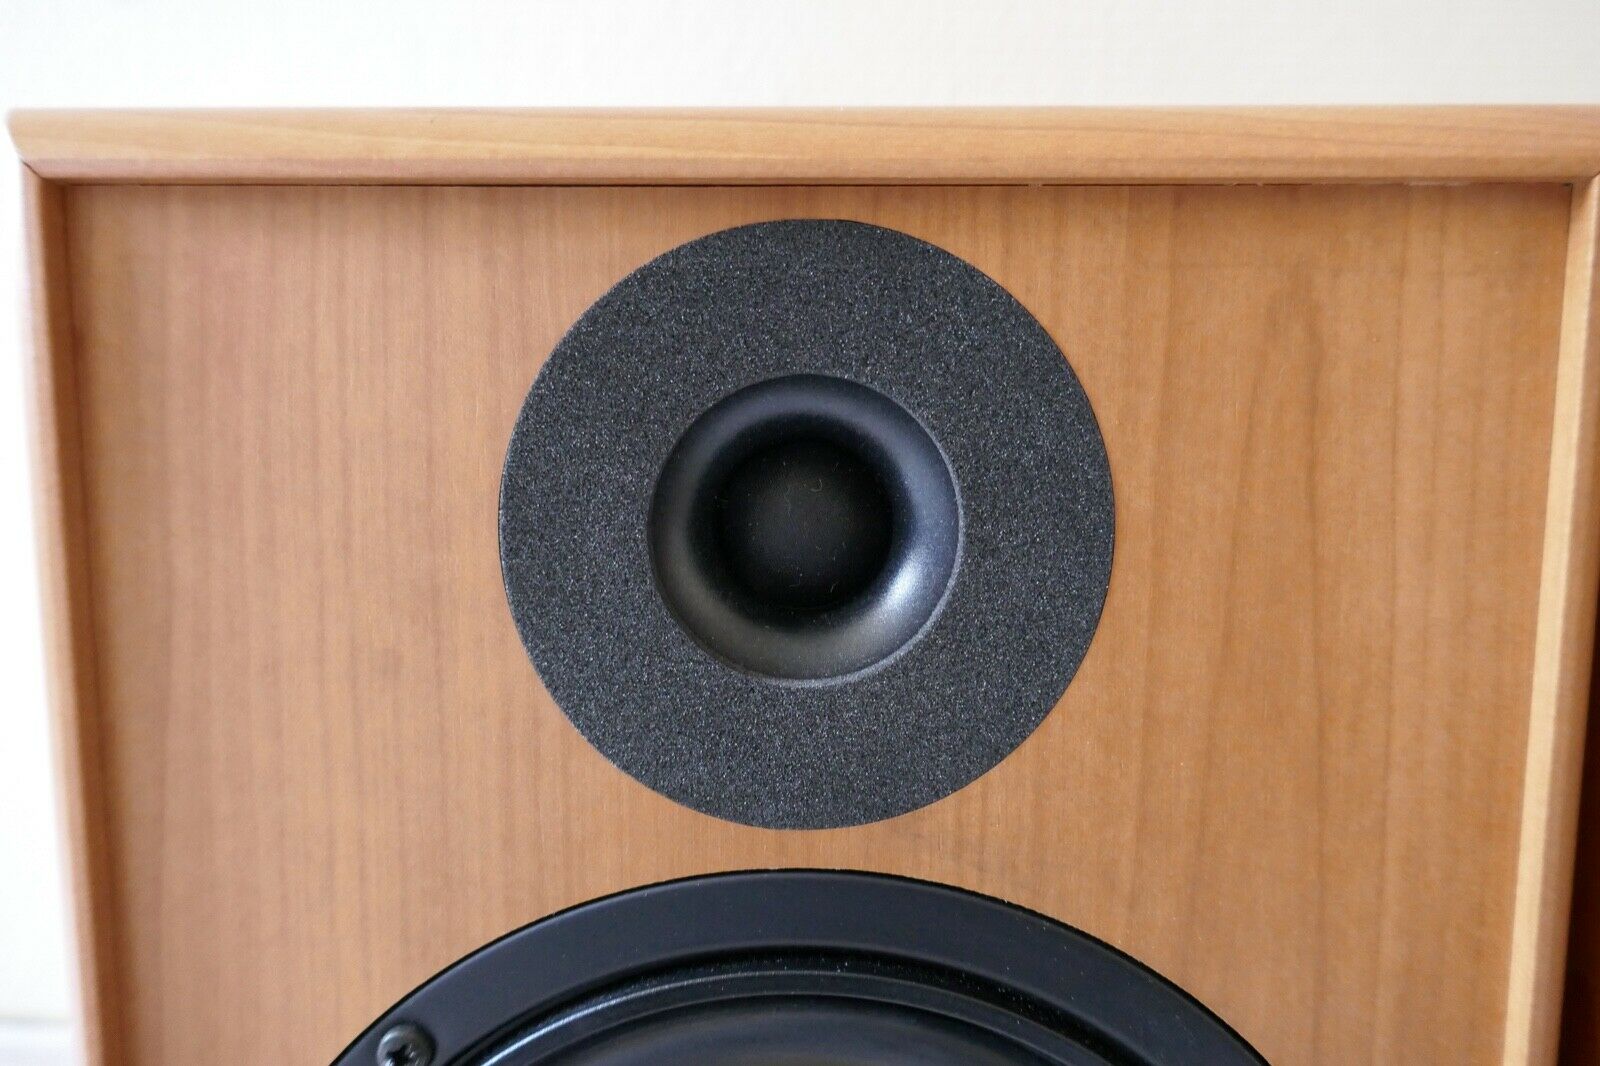 enceintes speakers davis acoustics vintage occasion